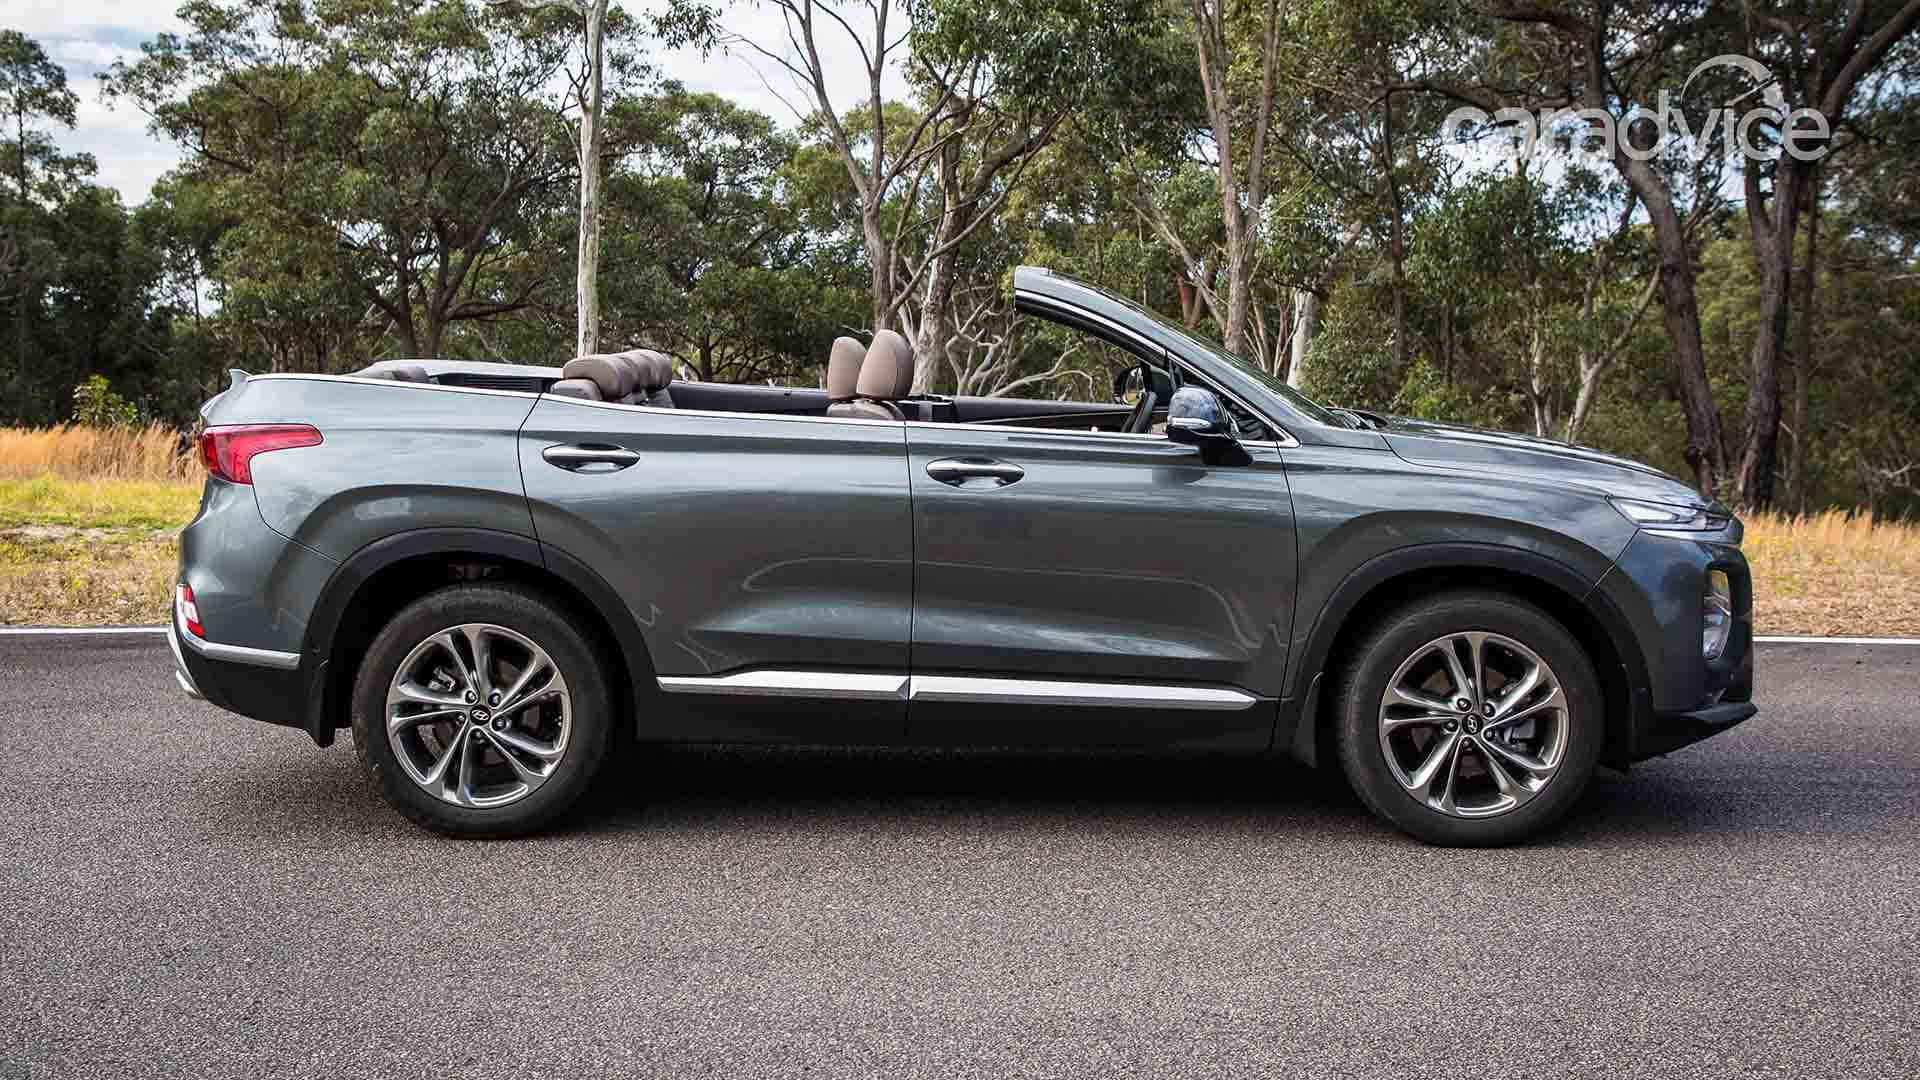 Berita, All New Hyundai Santa Fe Cabrio Australia samping: All New Hyundai Santa Fe Cabrio : Saat SUV Korea Tampil Topless!